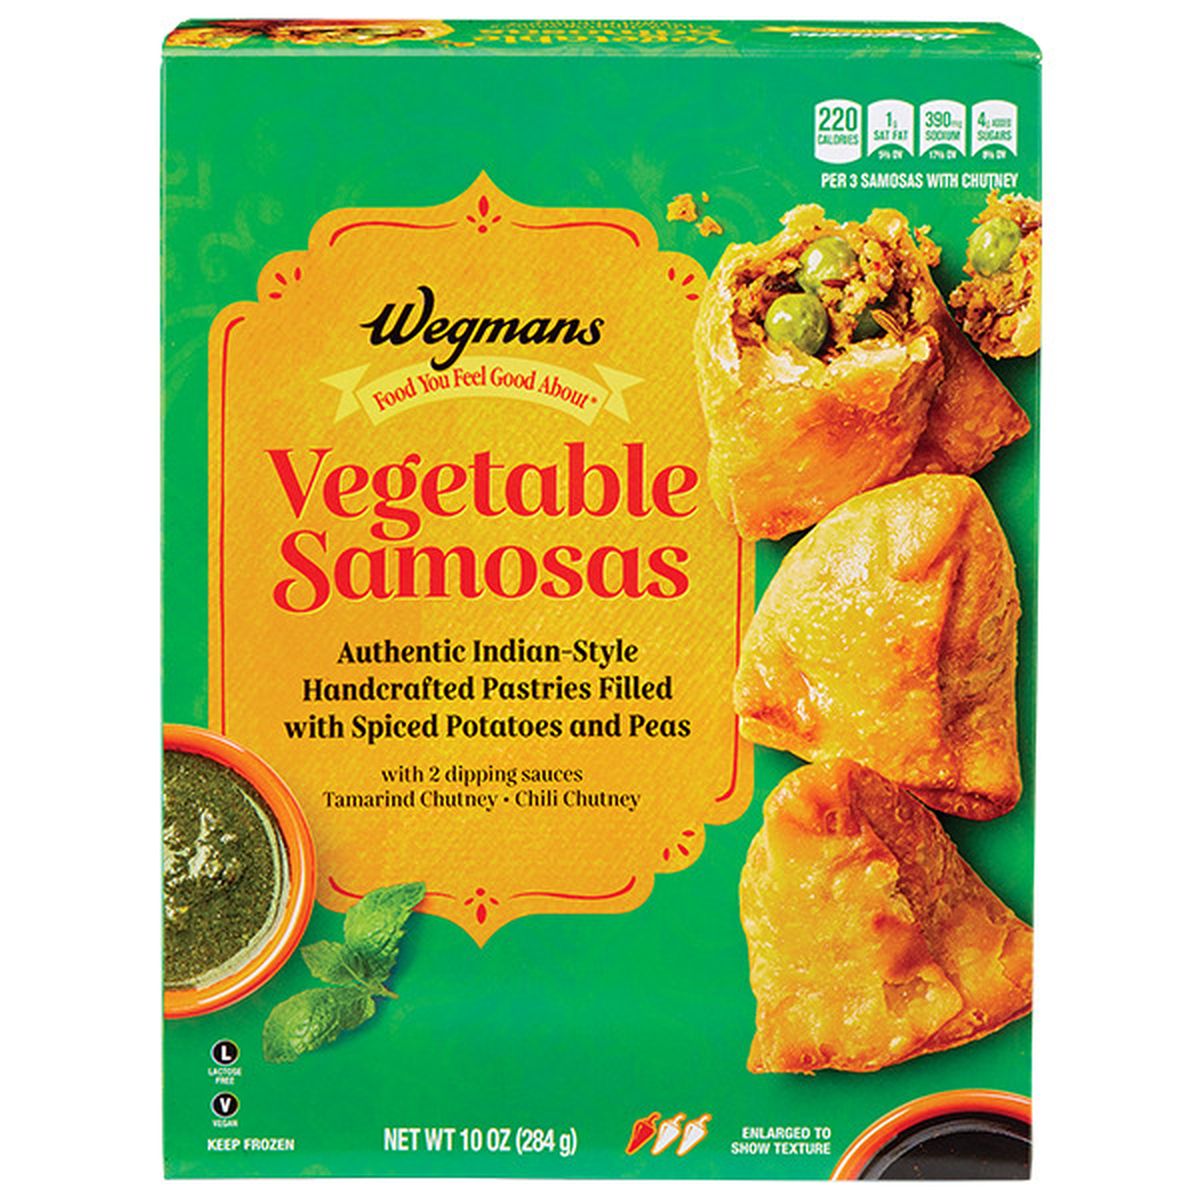 Calories in Wegmans Frozen Vegetable Samosas